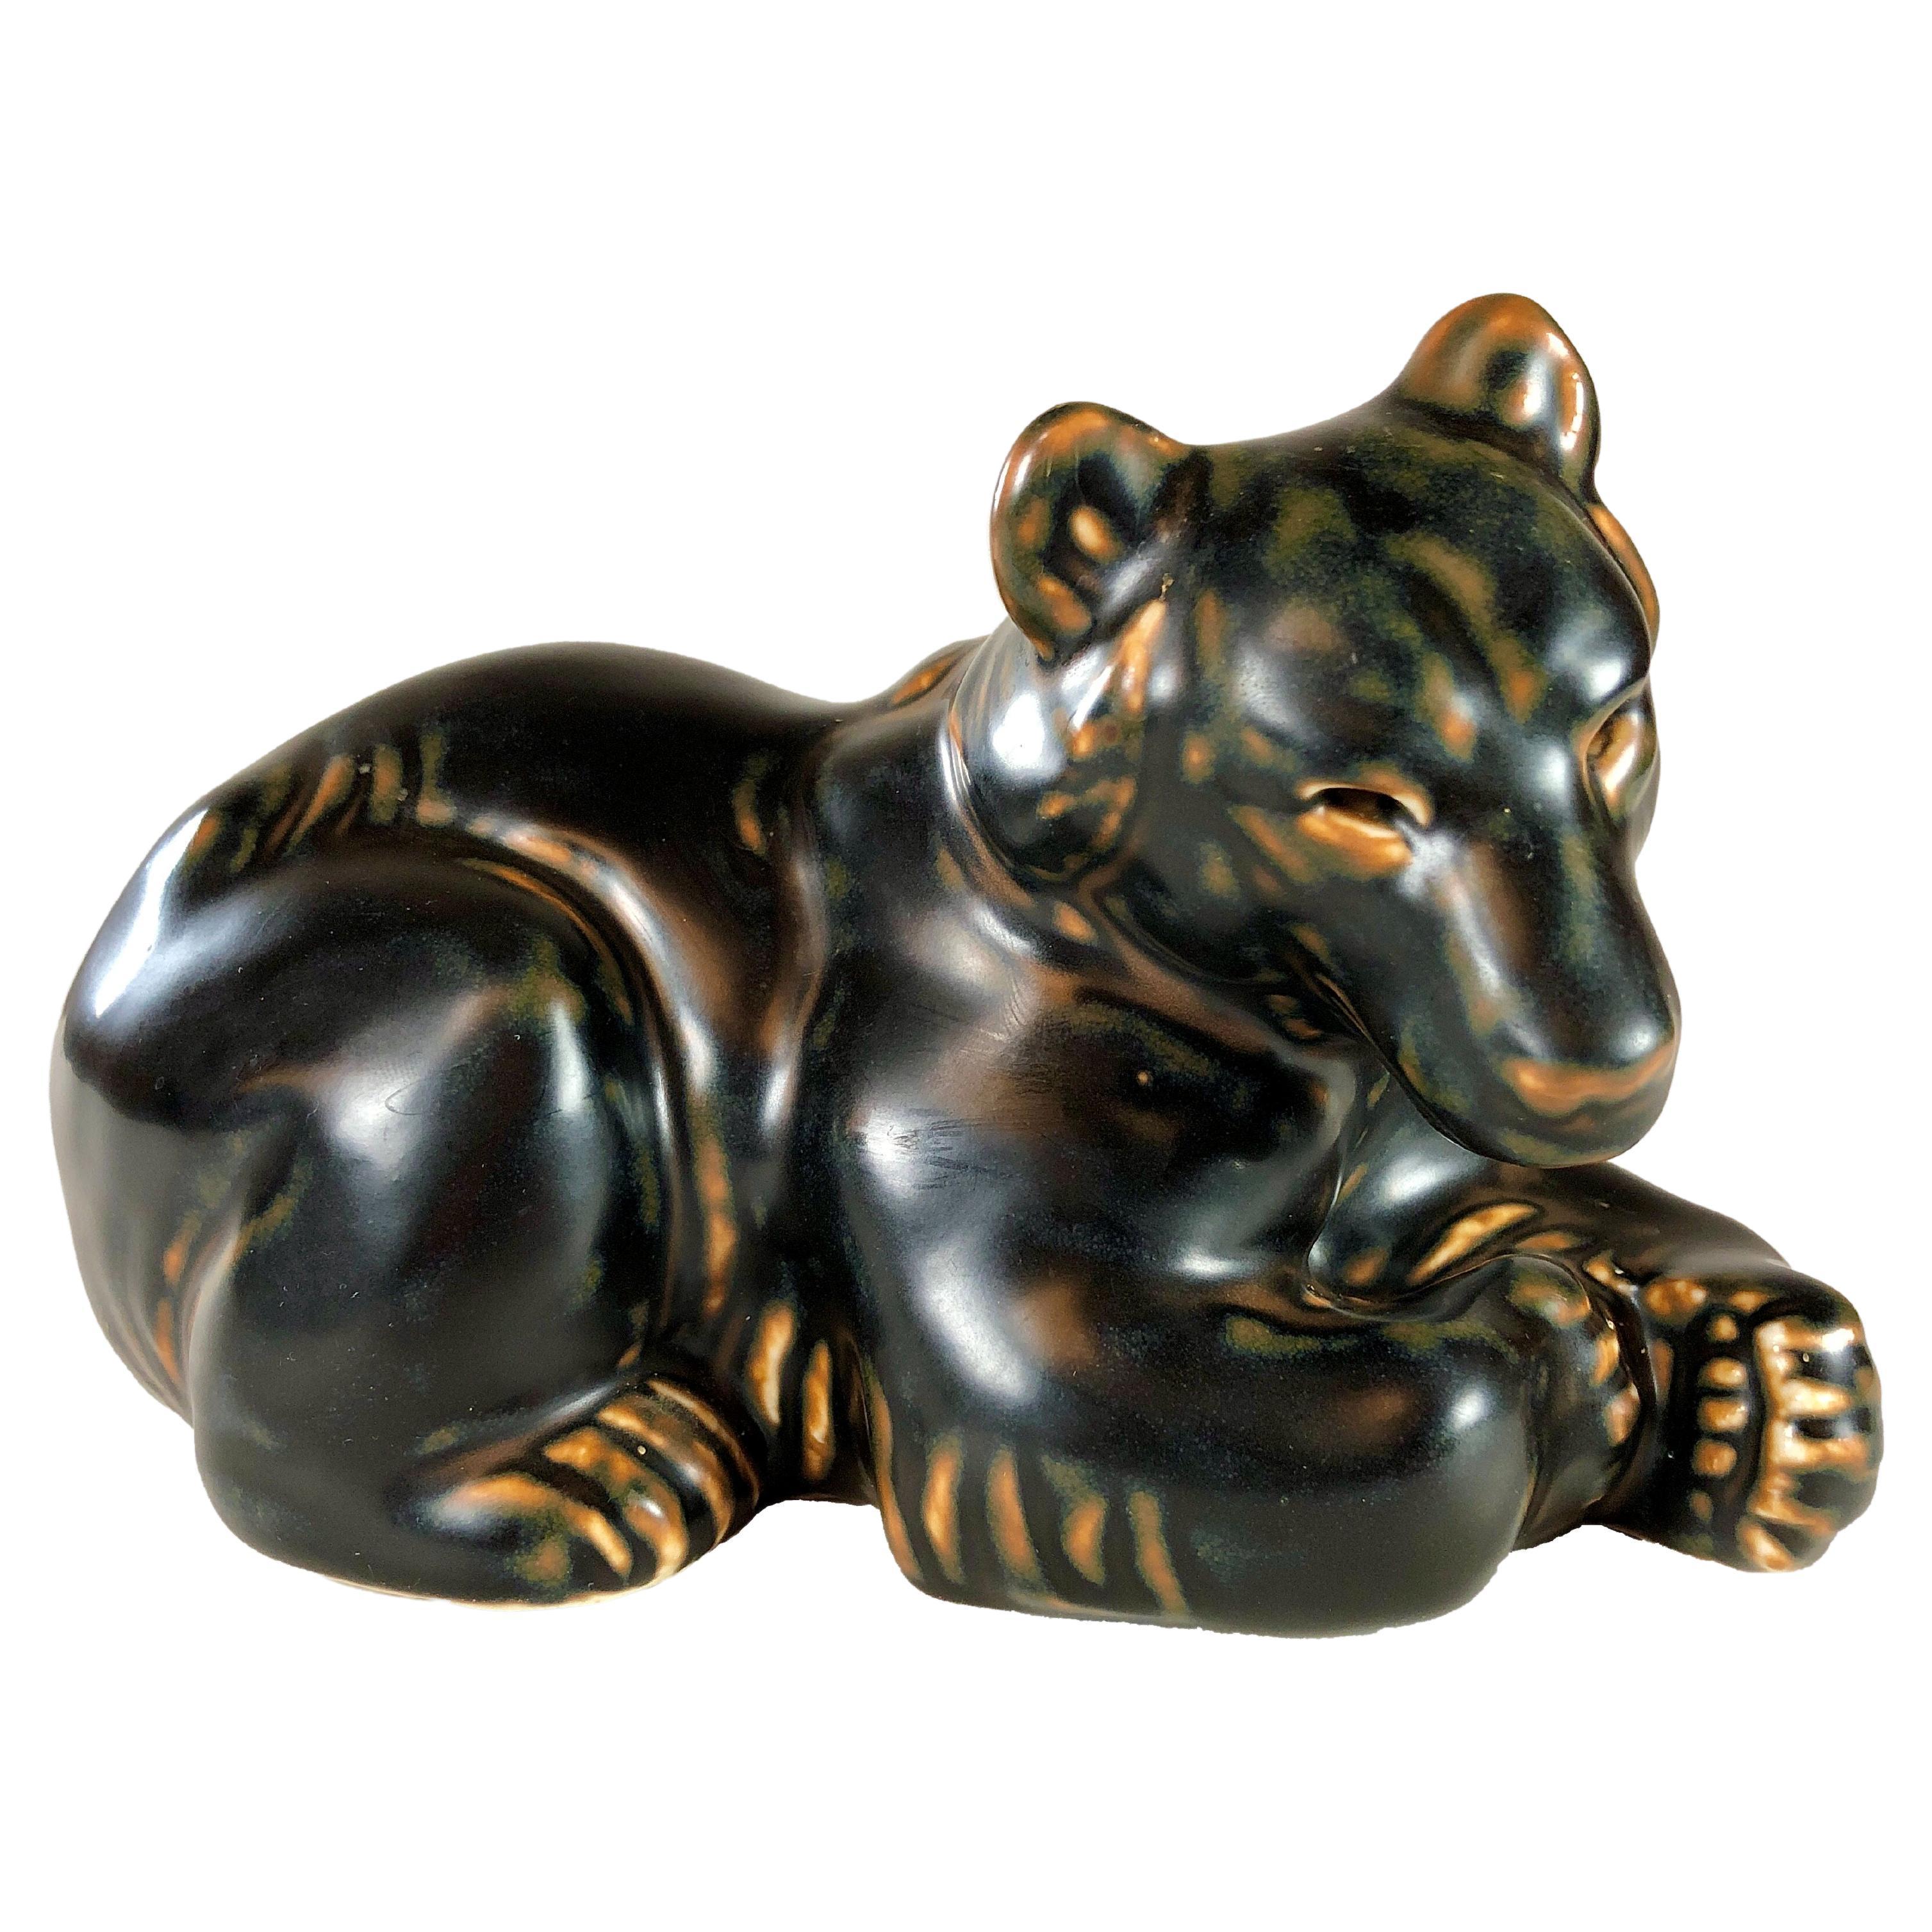 Figurine de mère ourse danoise des années 1950 de Knud Kyhn pour Royal Copenhagen